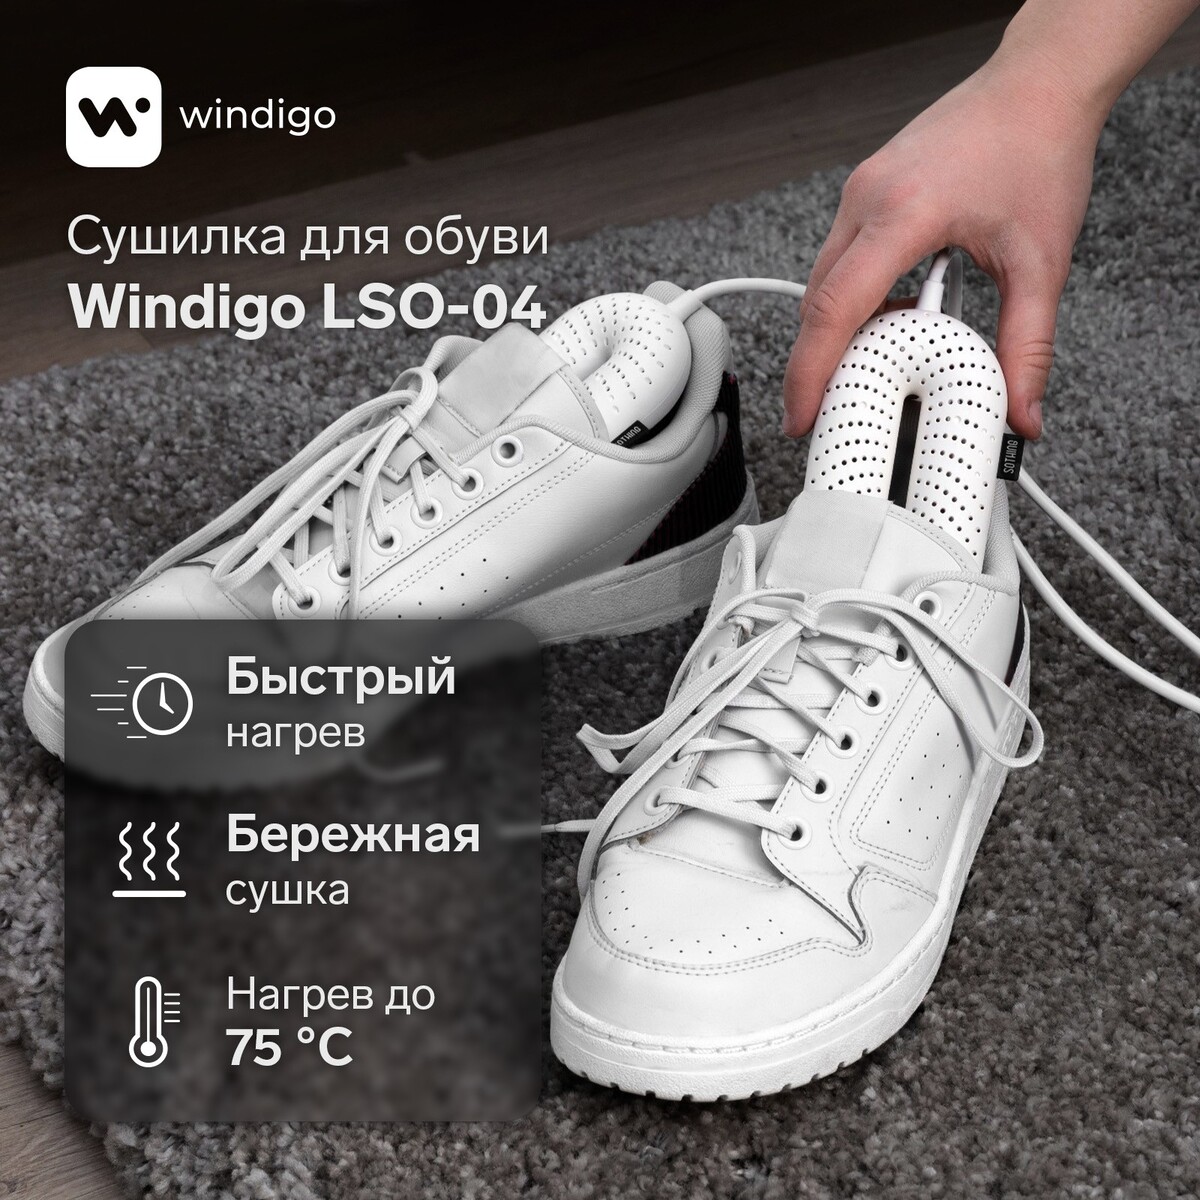 Сушилка для обуви windigo lso-04, 17 см, 20 вт, индикатор, белая сушилка для обуви irit ir 3700 12 вт электрическая 220 в